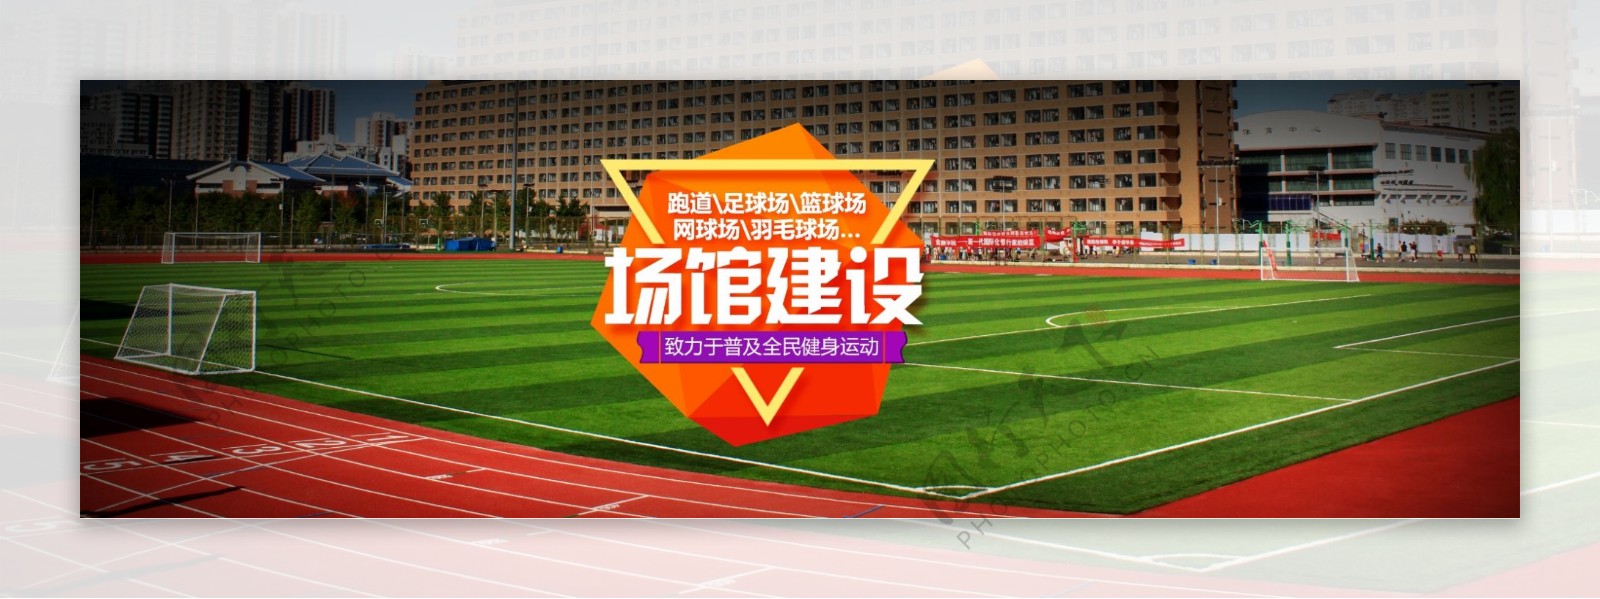 学校足球场banner网站